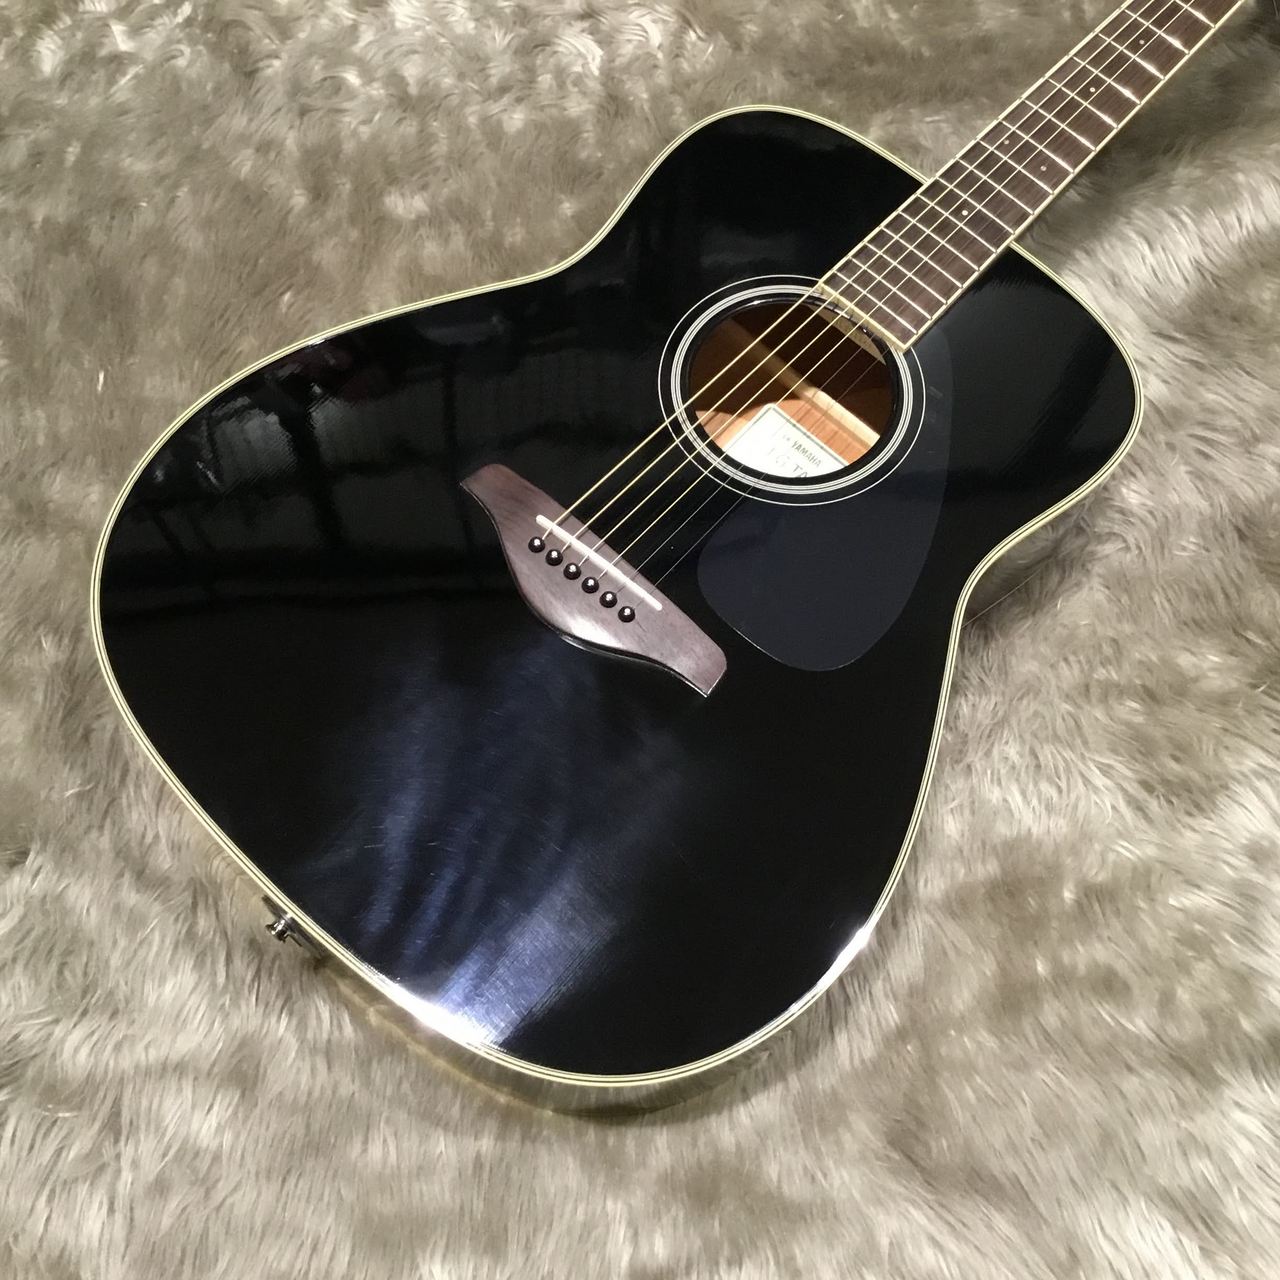 エレアコ黒アコースティックギター